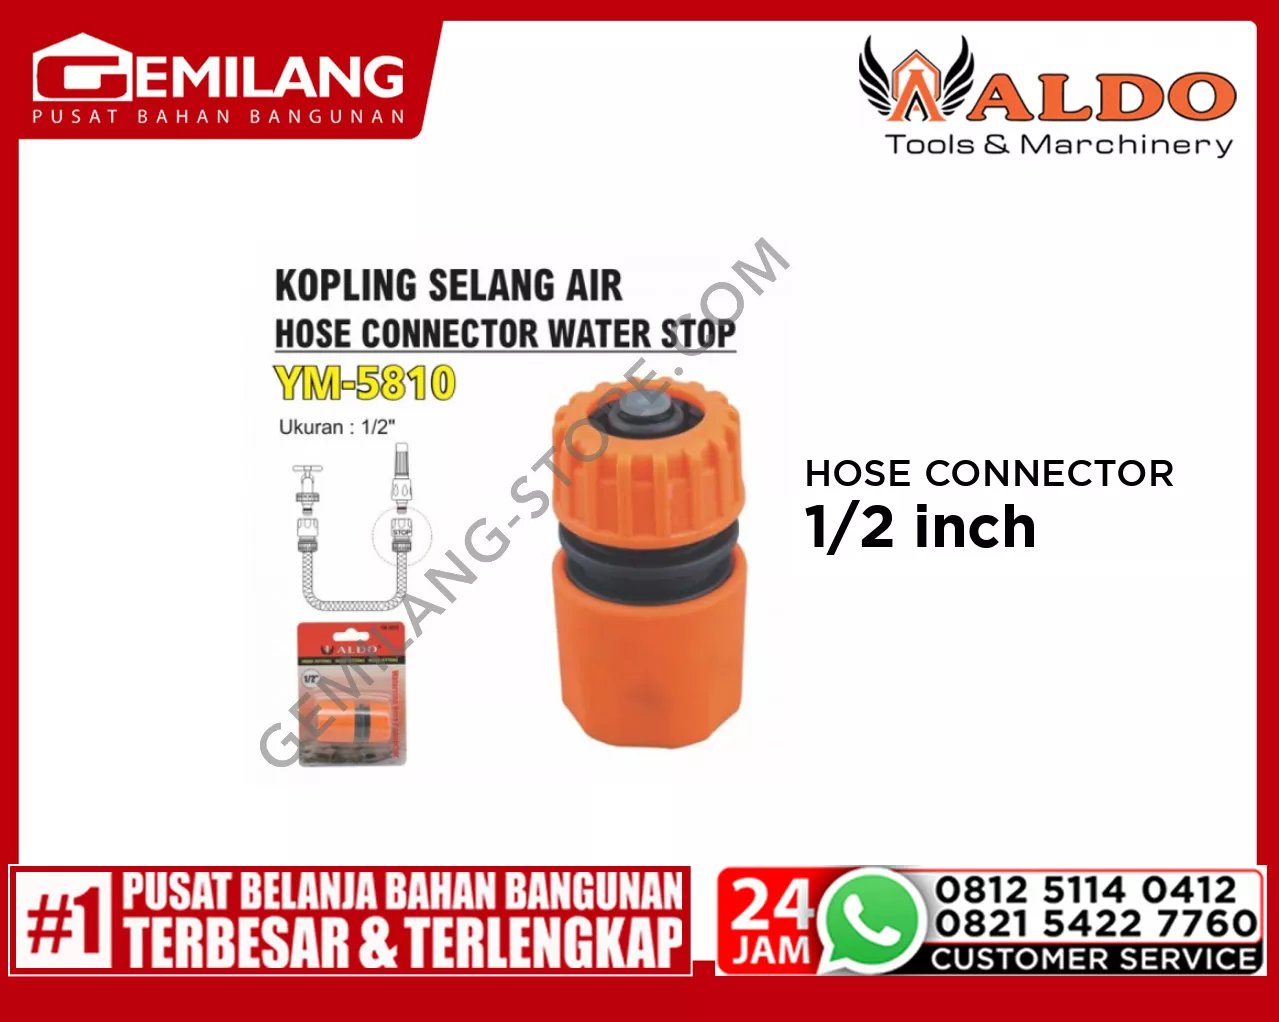 ALDO HOSE CONNECTOR WATER STOP YM - 5810 1/2inch